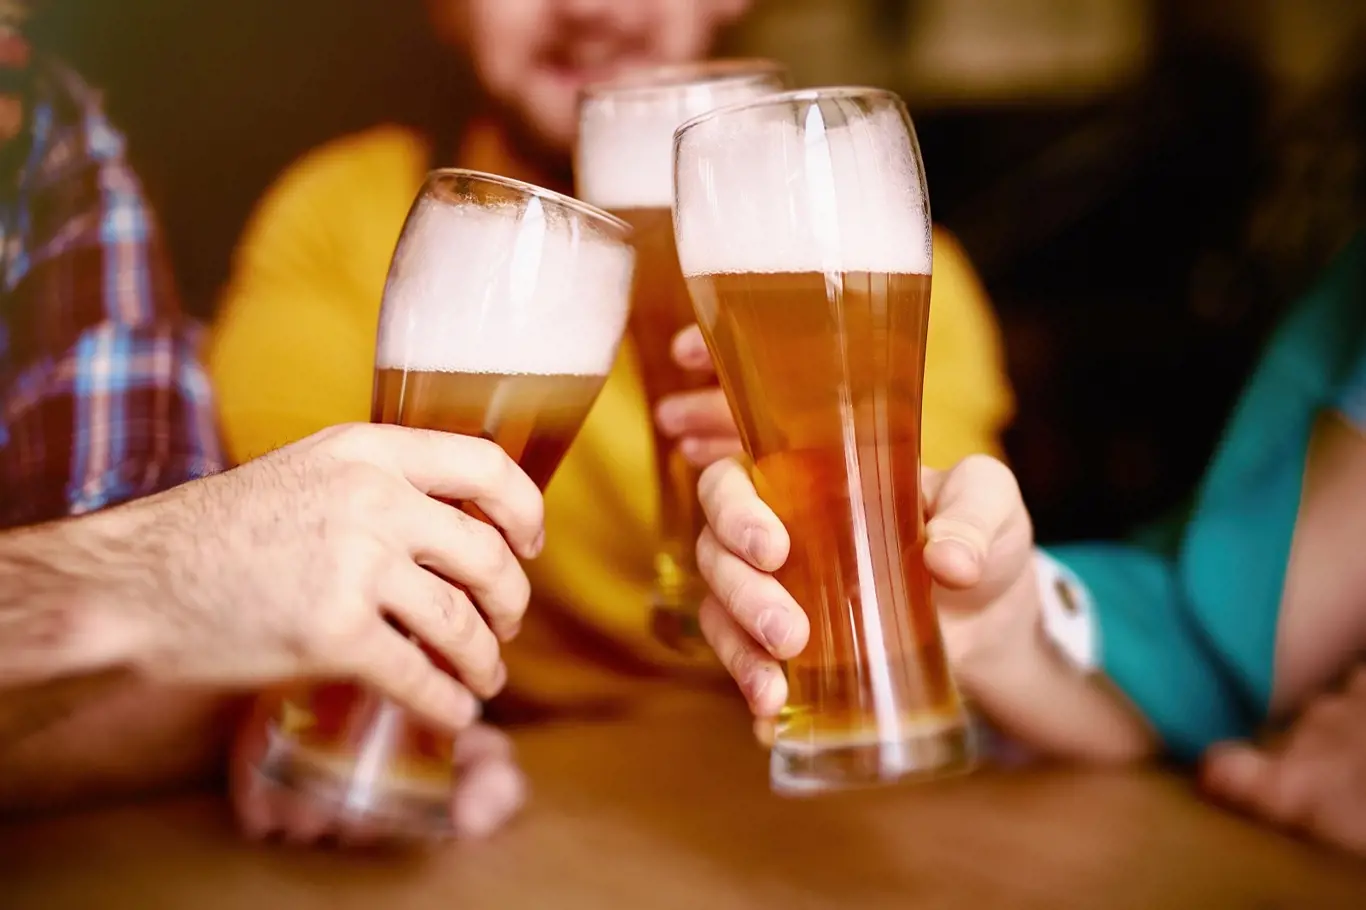 Všichni potřebujeme přátele, ale časté návštěvy restaurace spíše hrozí alkoholismem